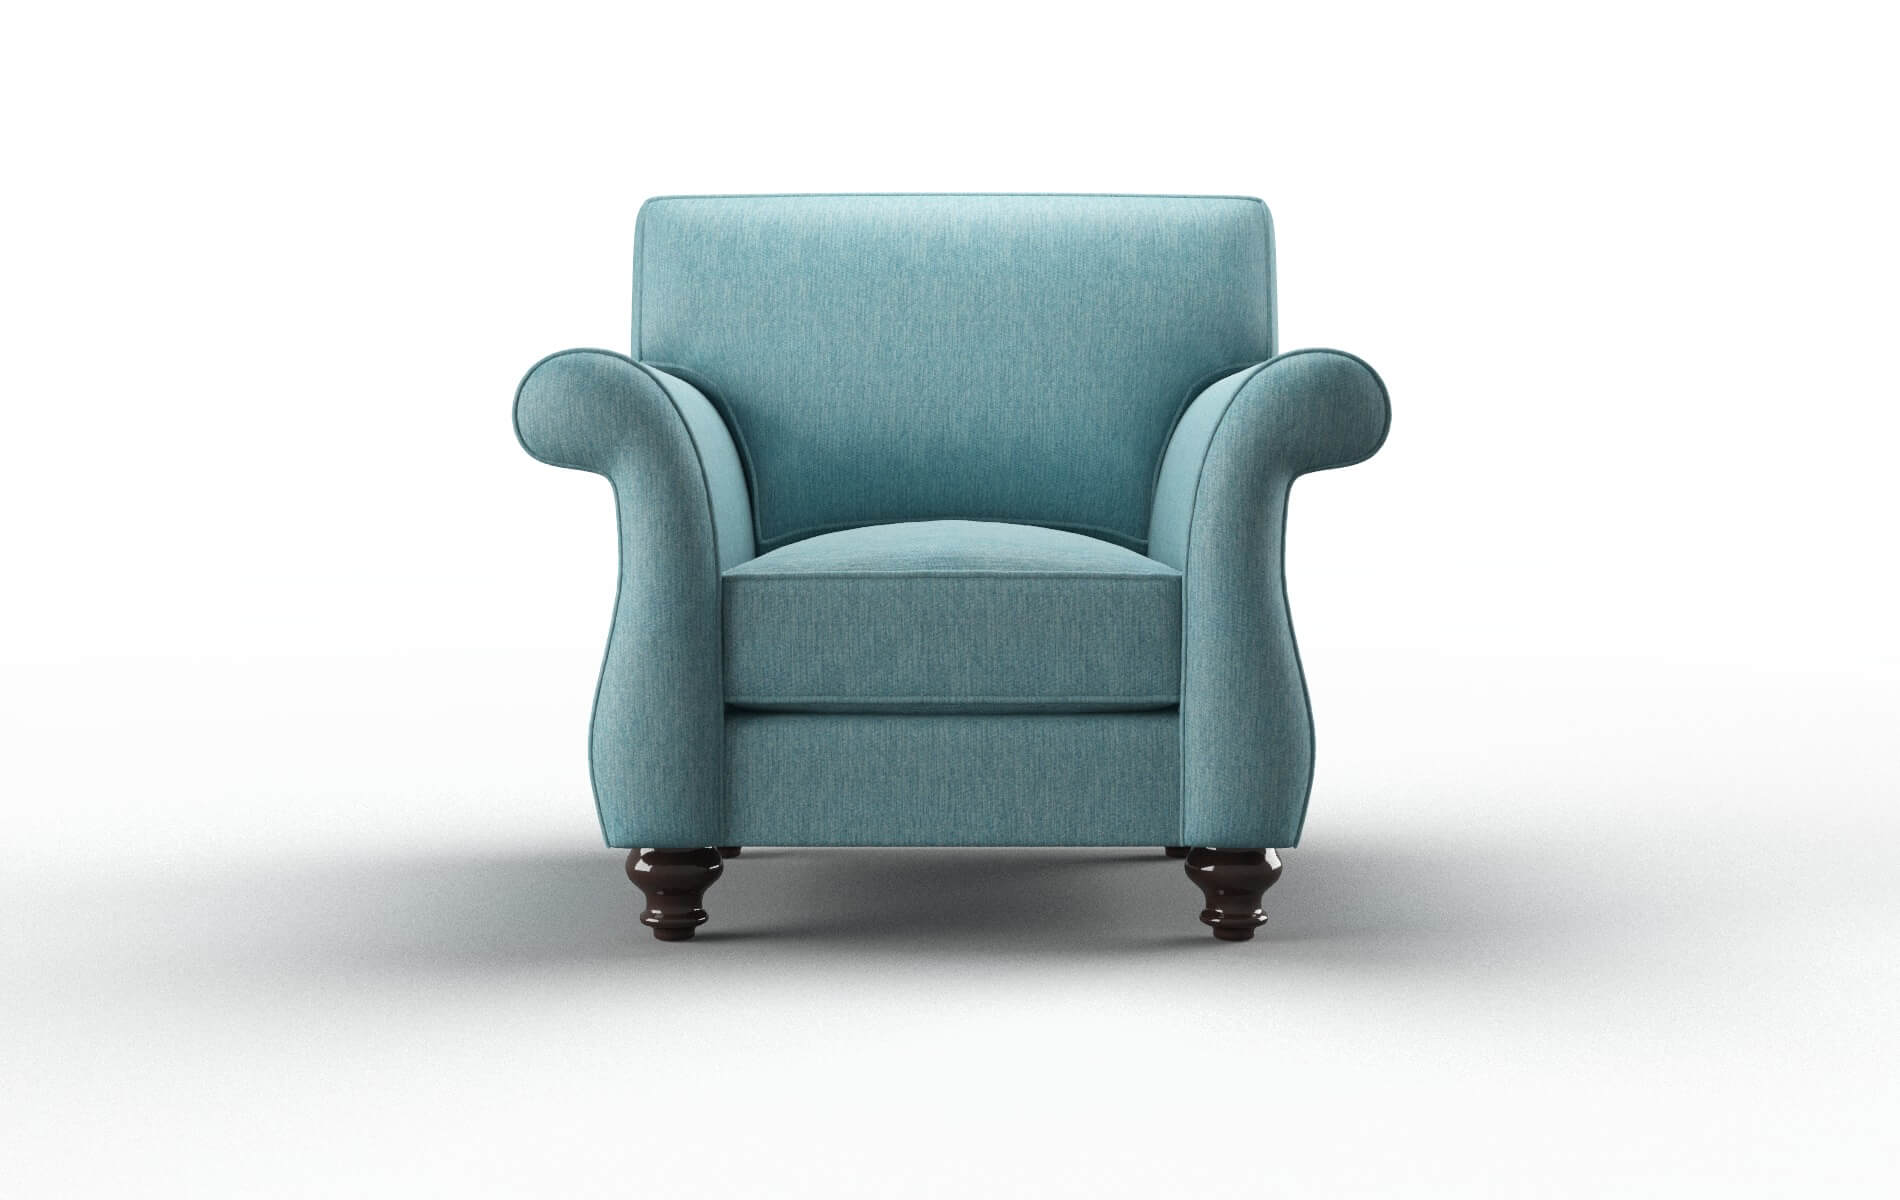 Pisa Cosmo Turquoise chair espresso legs